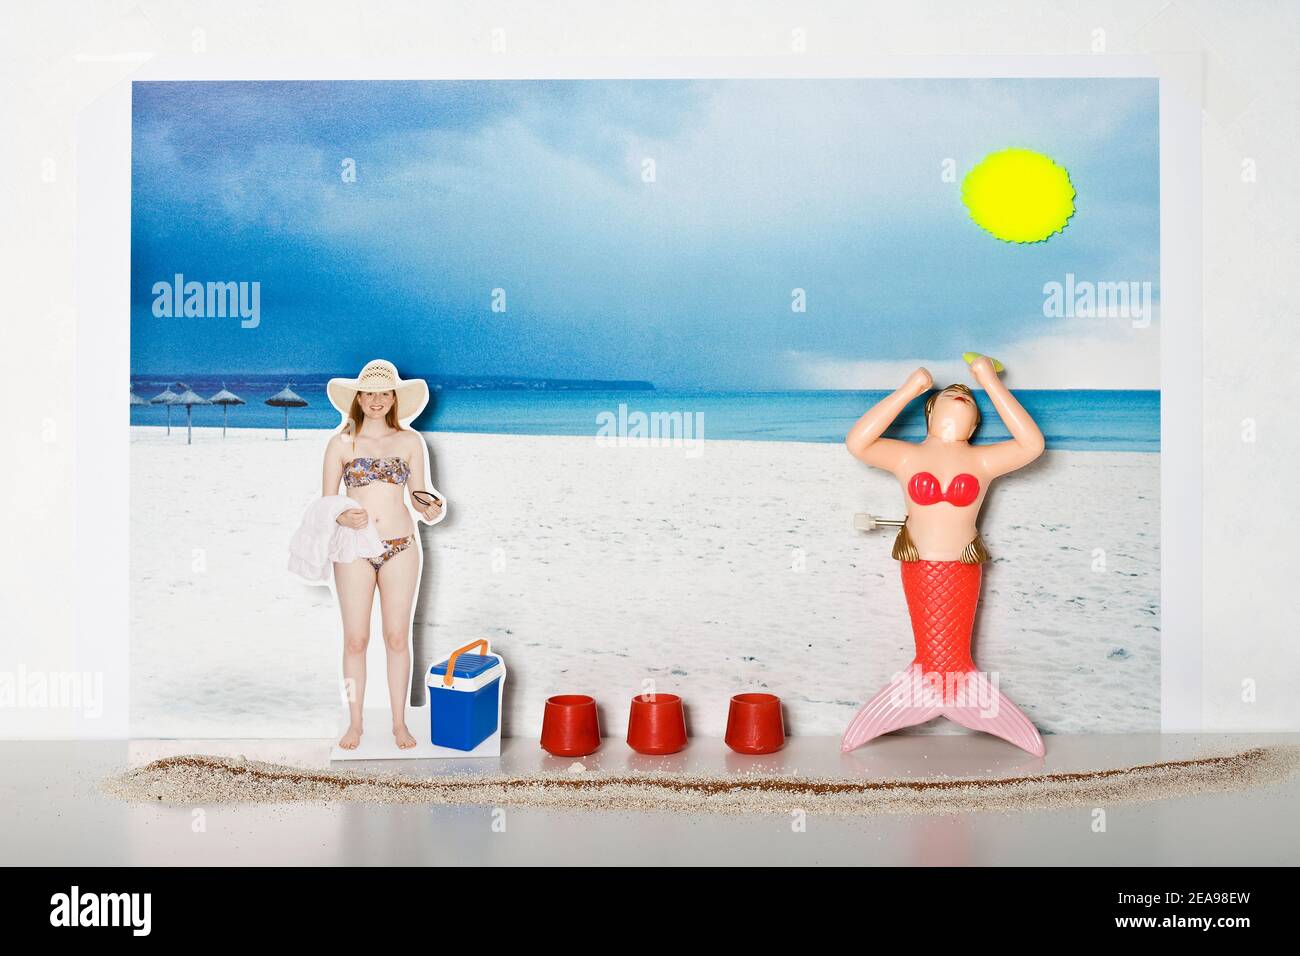 Mujer joven en el bikini se encuentra en la playa, toalla de baño y gafas de sol en la mano, baño de plástico sirena adoran el sol, nevera y contenedor rojo entre ellos, sol de plástico, foto de fondo de una playa, arena subterránea y blanco, foto collage Foto de stock